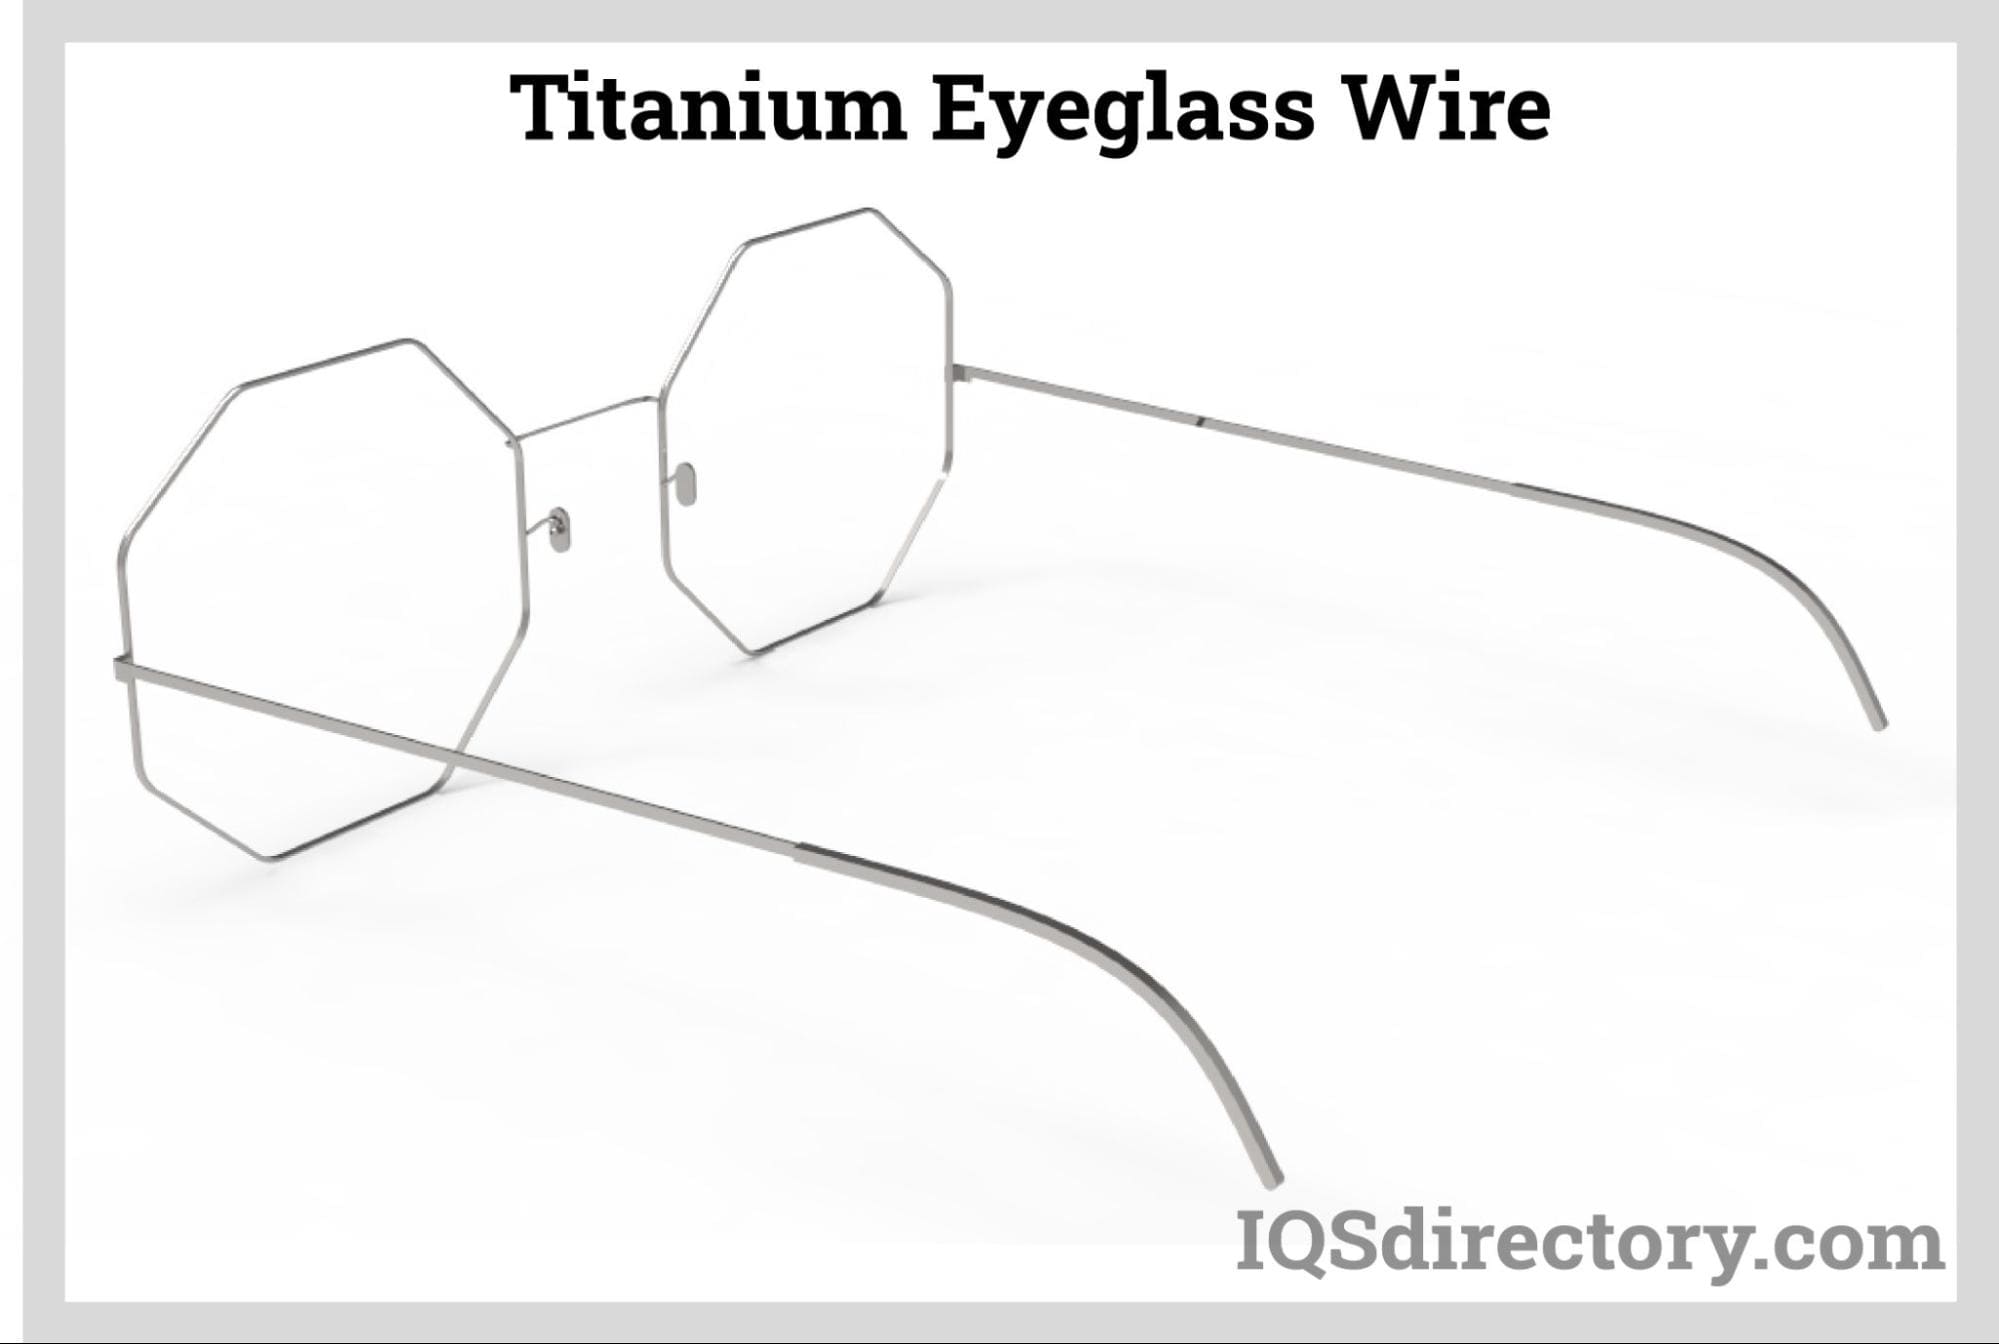 Titanium Eyeglass Wire